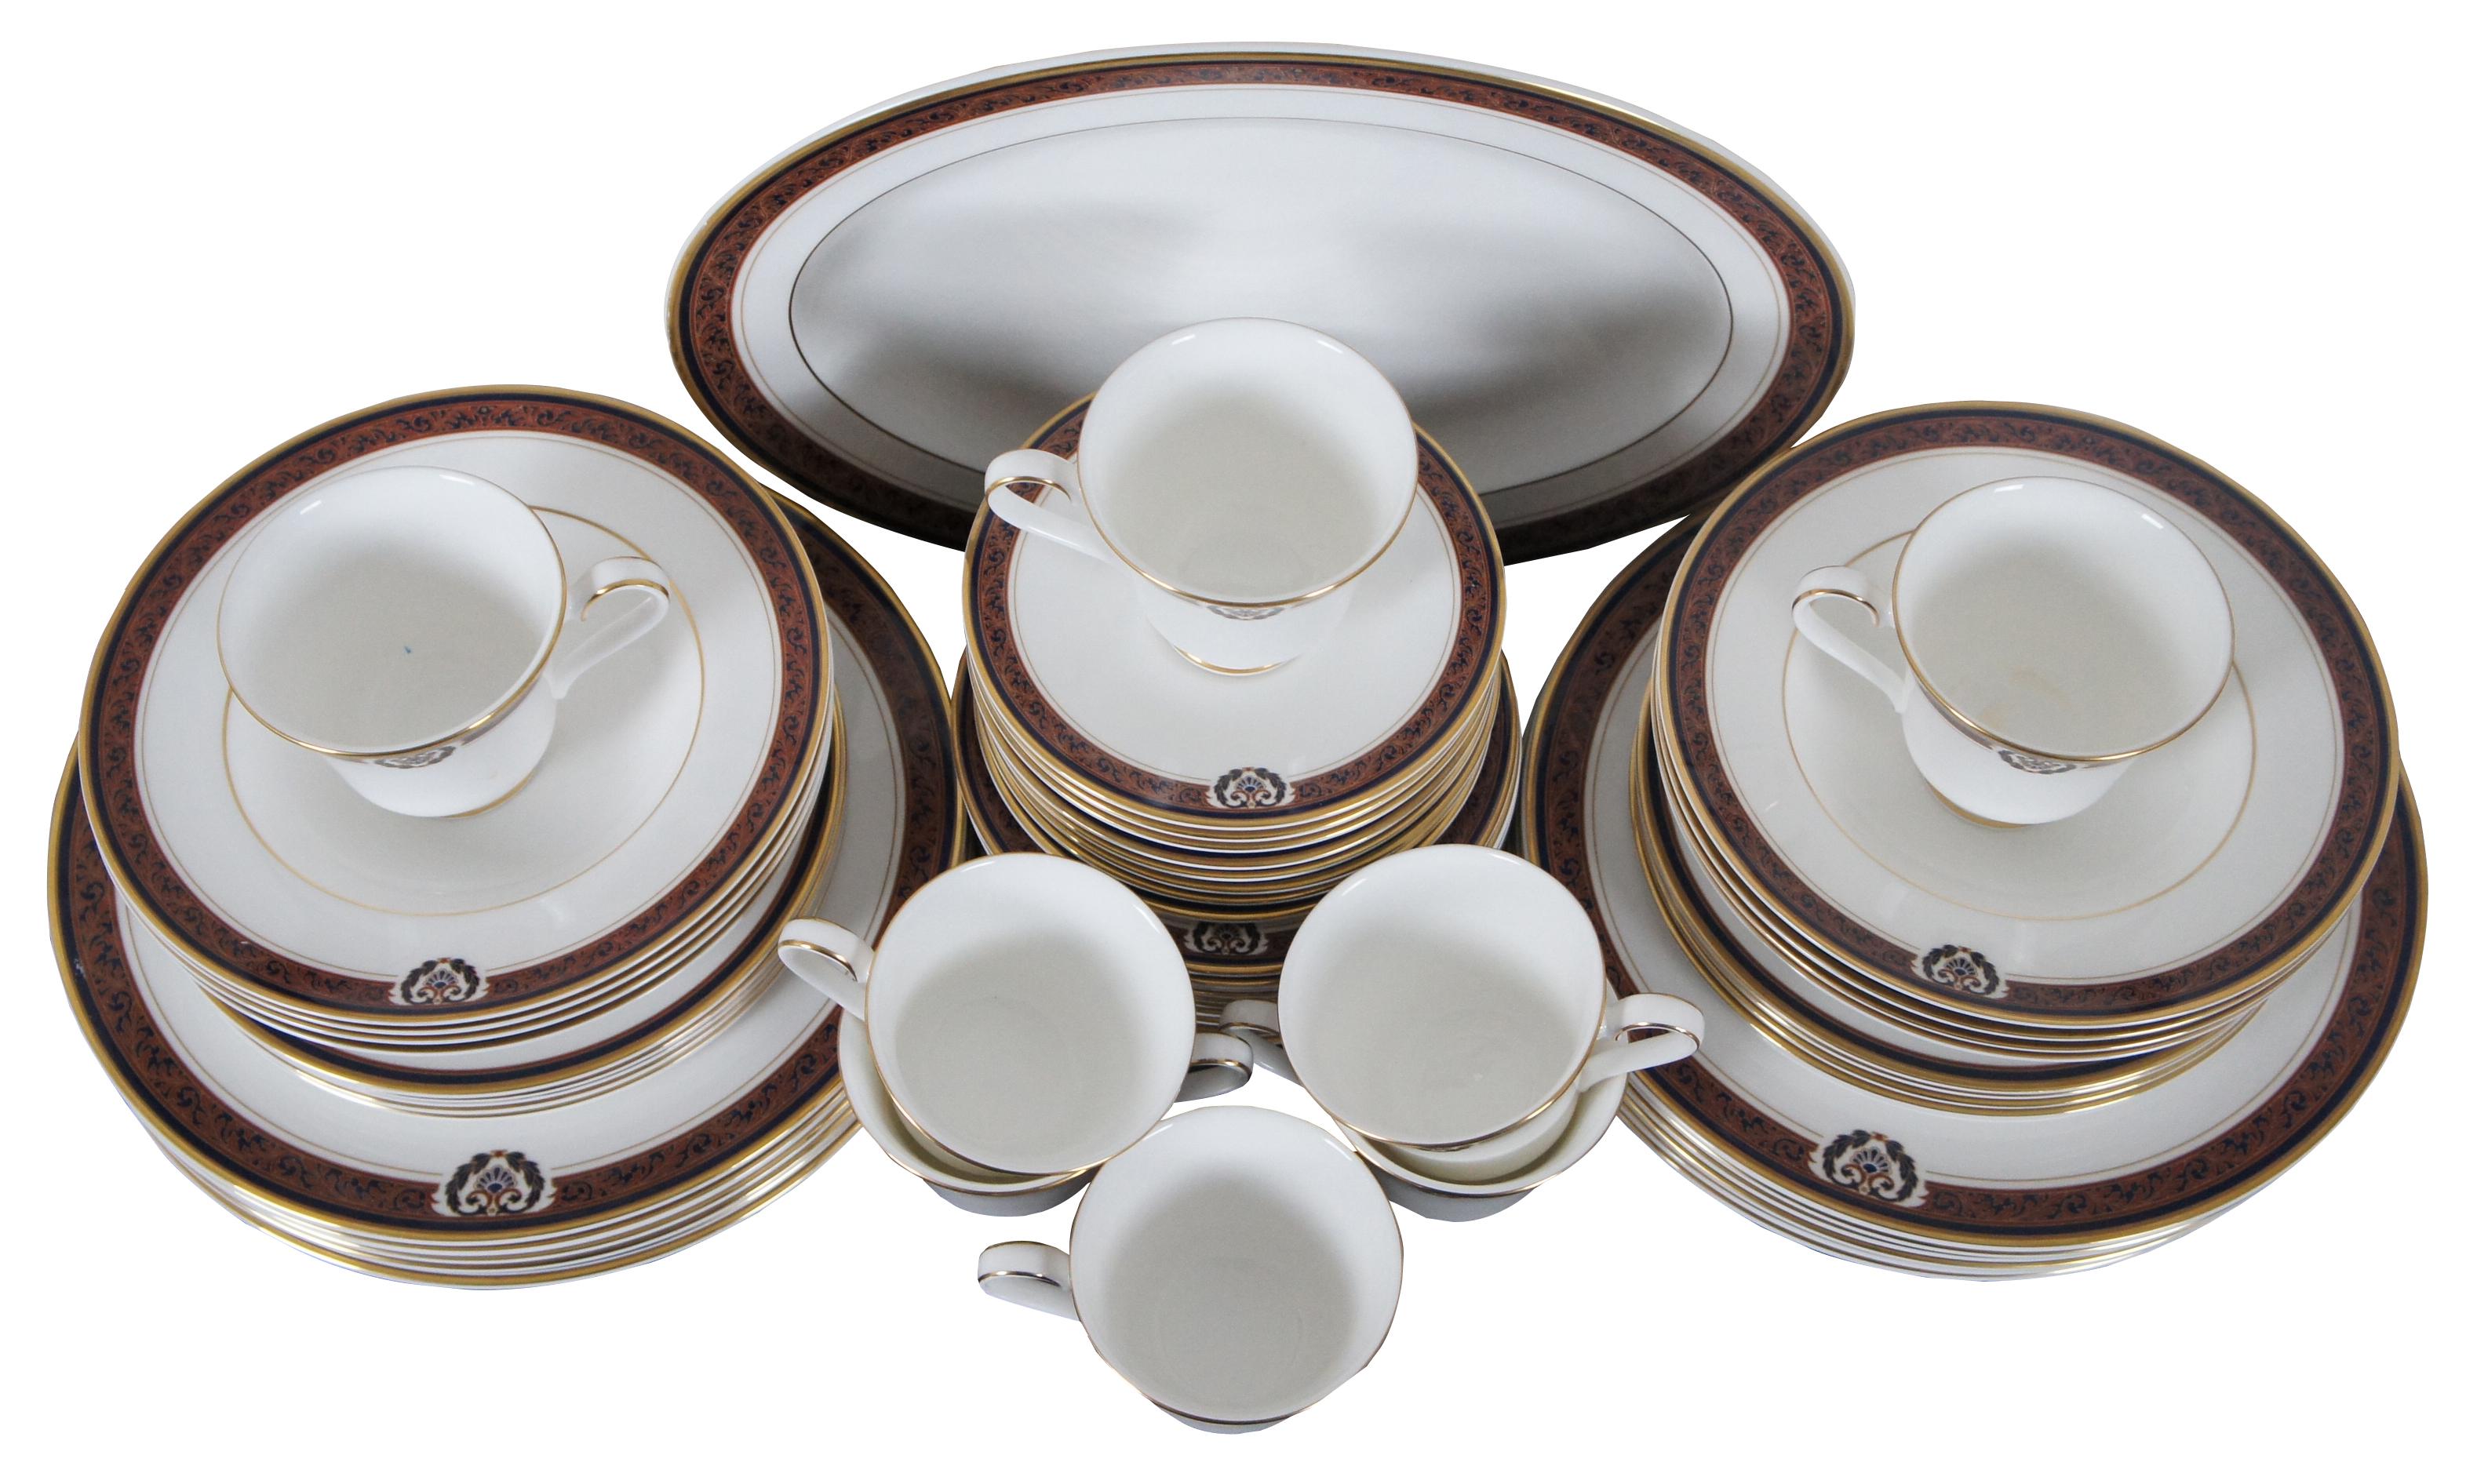 Service de vaisselle de 57 pièces en porcelaine fine Royal Doulton, motif H5221 - Regal Crest.

Mesures : 8 tasses à thé - 3.5